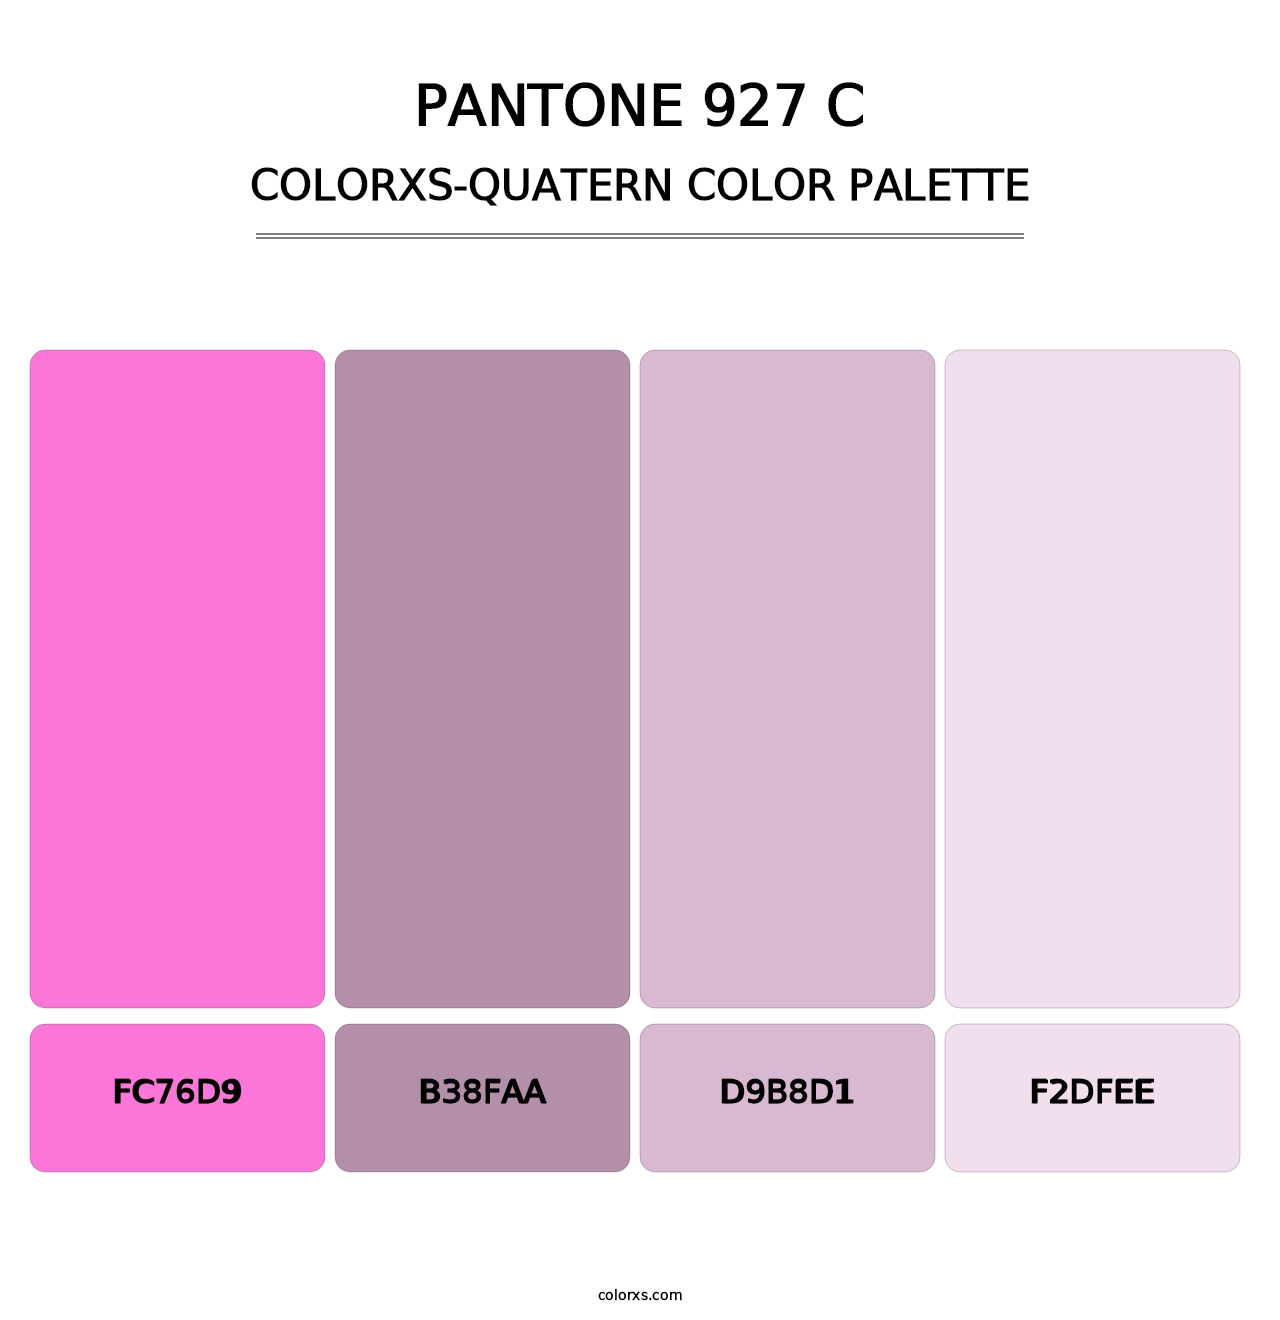 PANTONE 927 C - Colorxs Quatern Palette